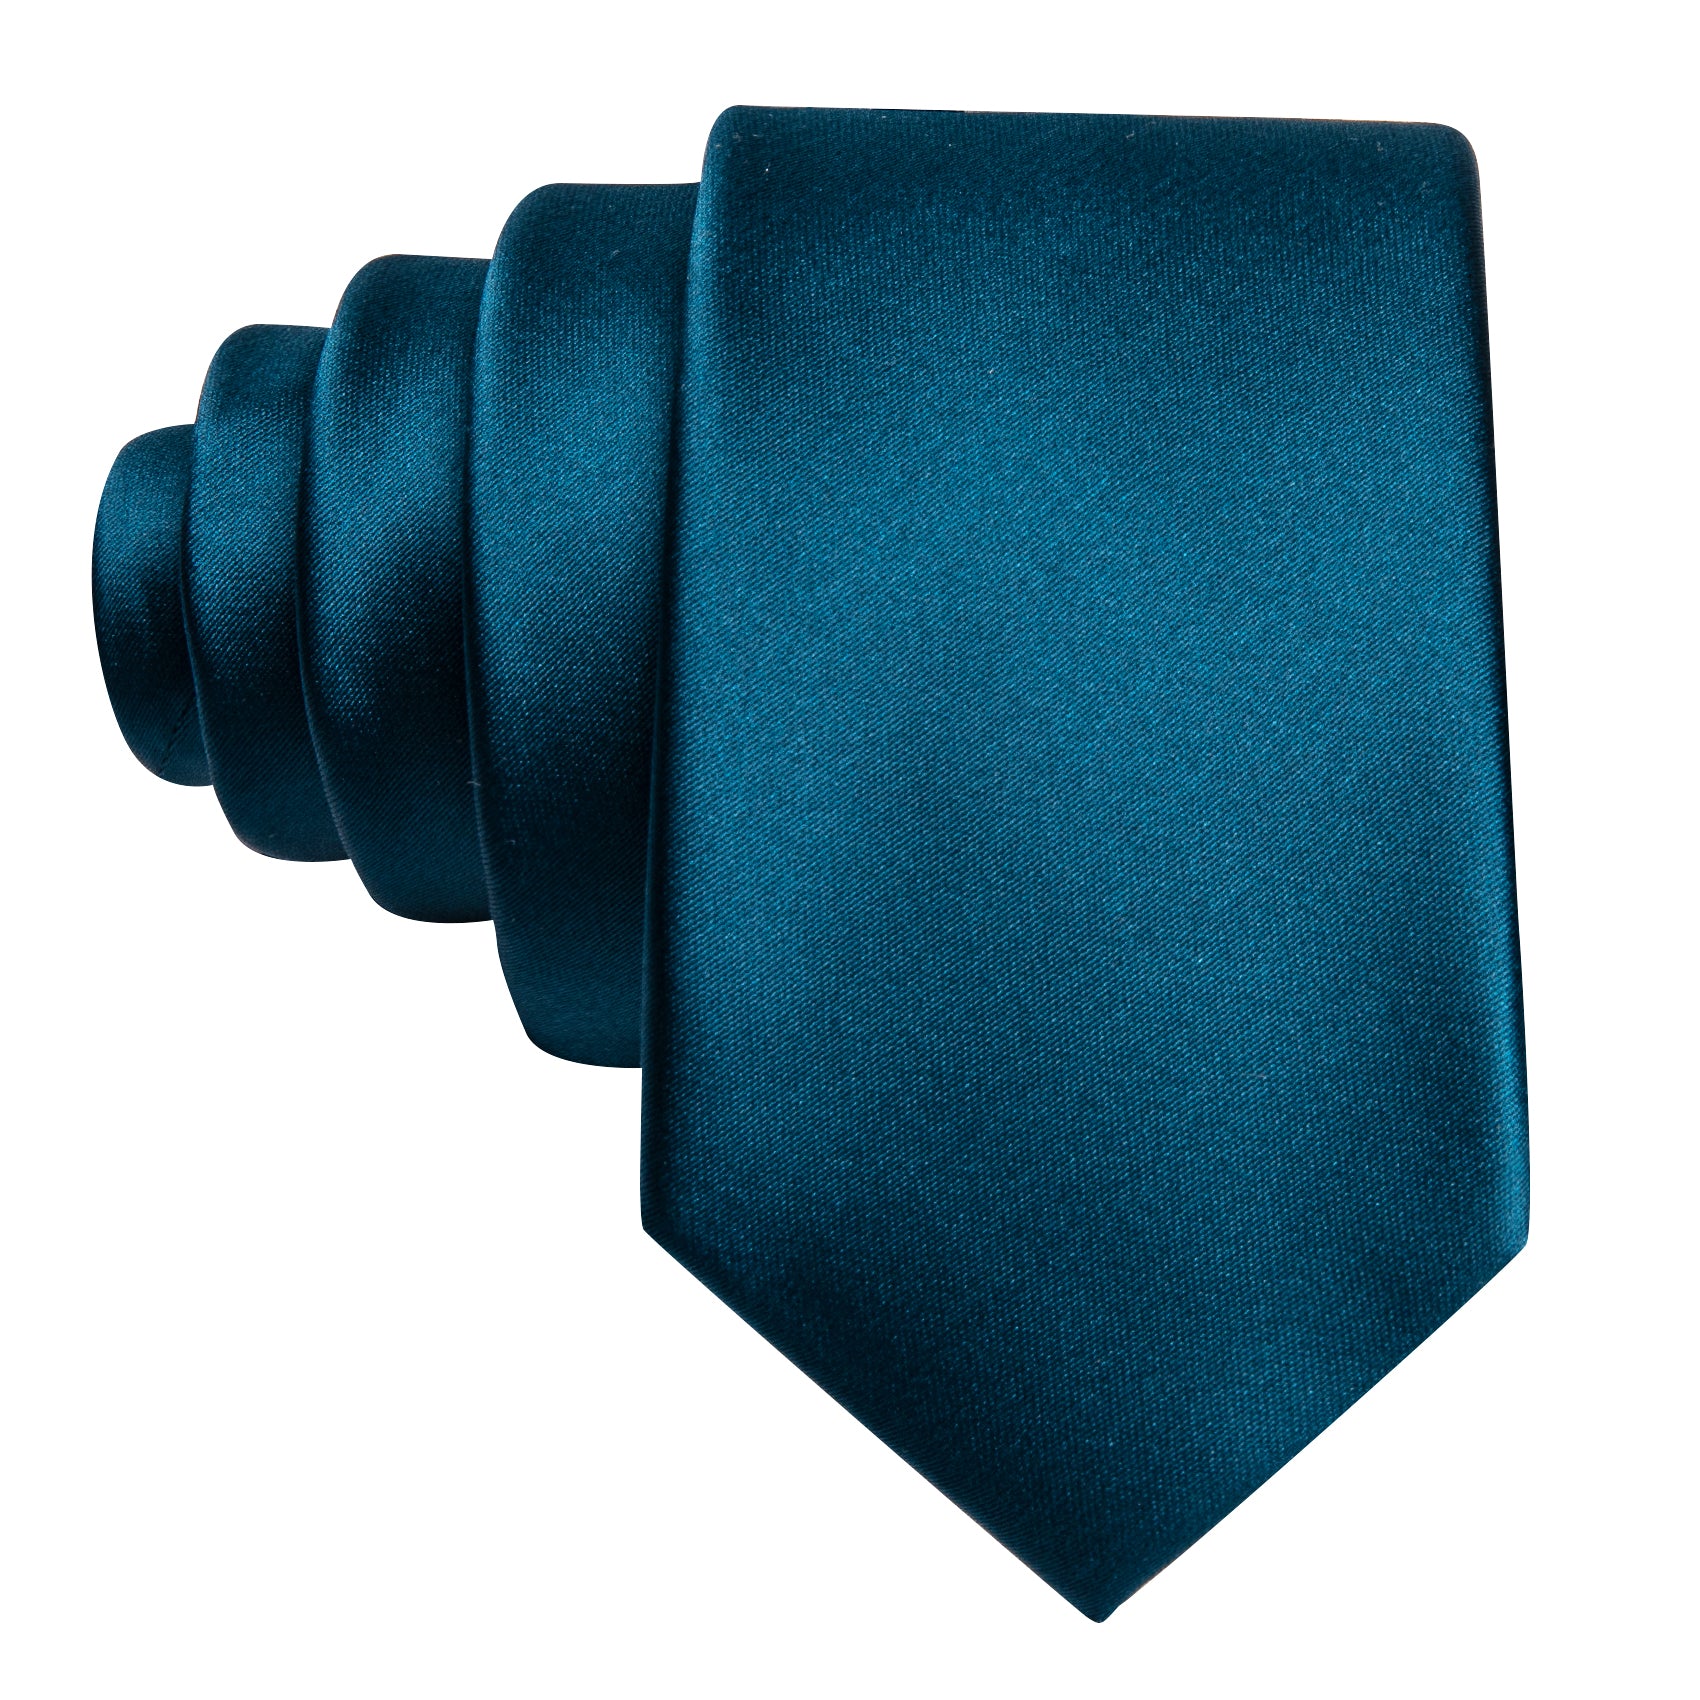 Oriental Blue Solid Tie Pocket Square Set For Kids